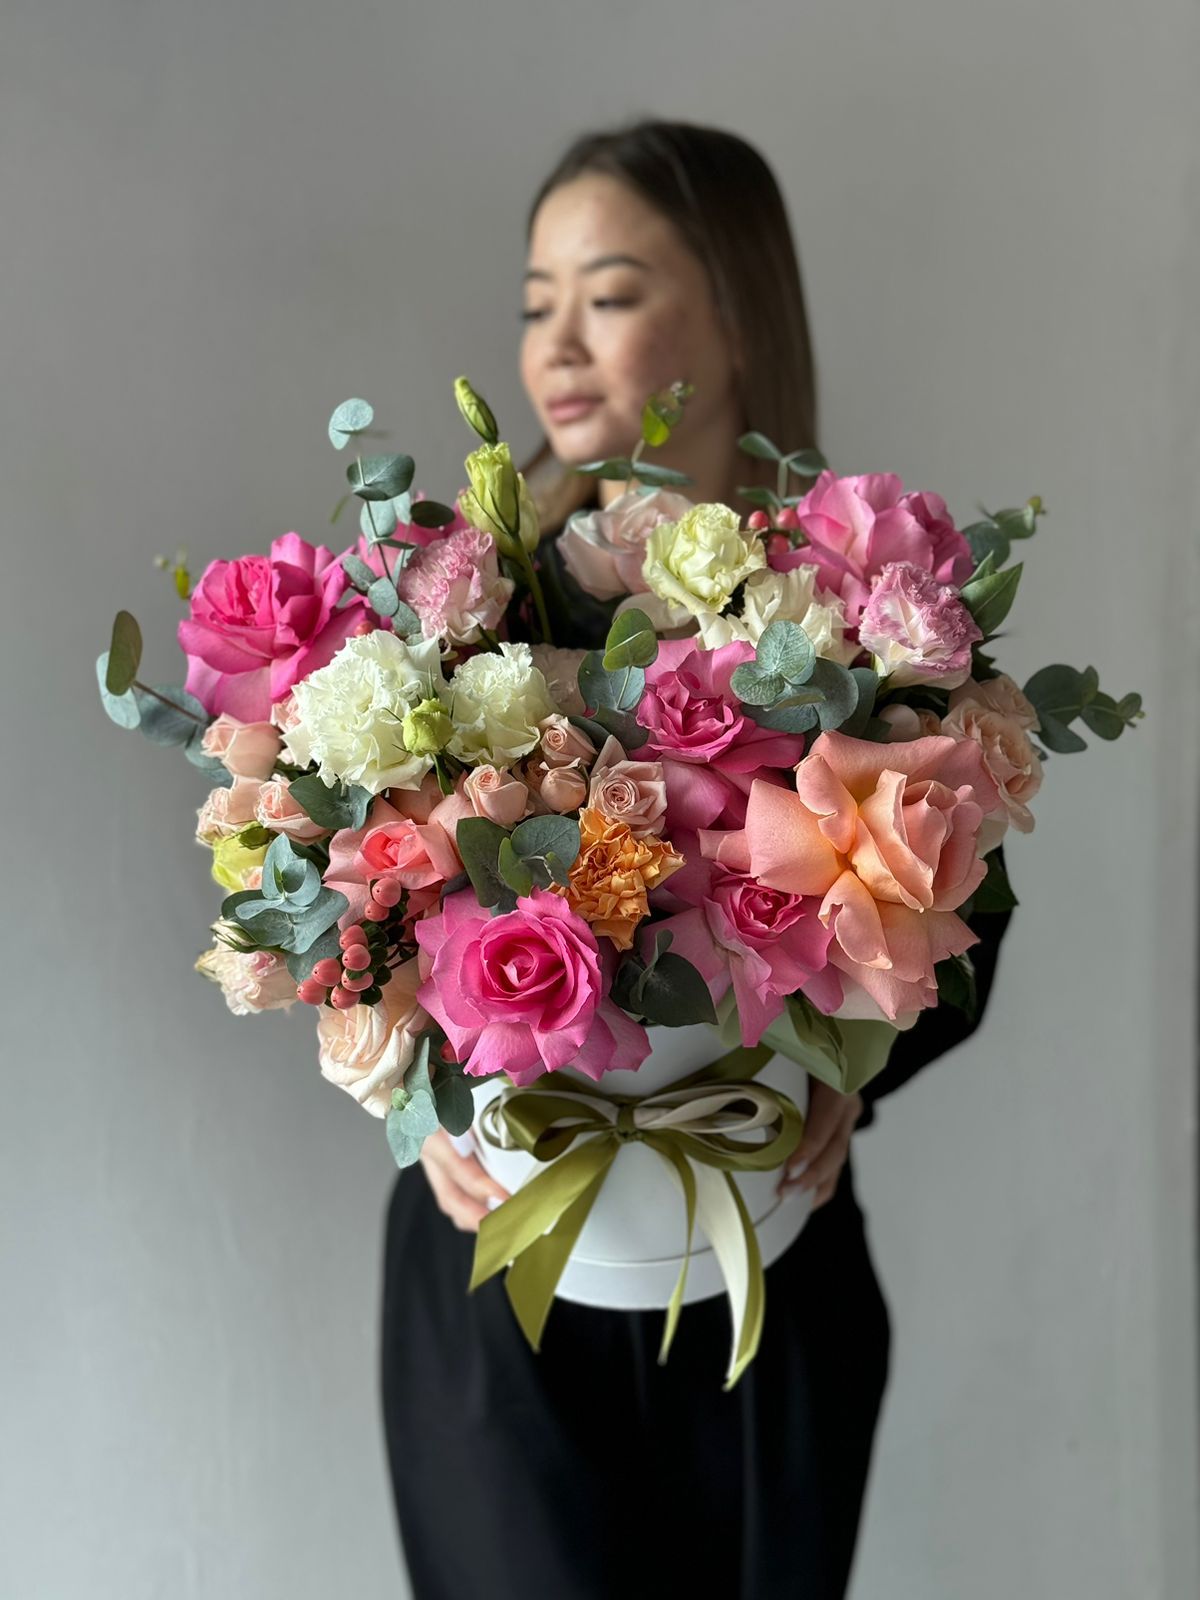 Композиция "Blossom Reverie" из роз, лизиантусов и гипперикума в коробке